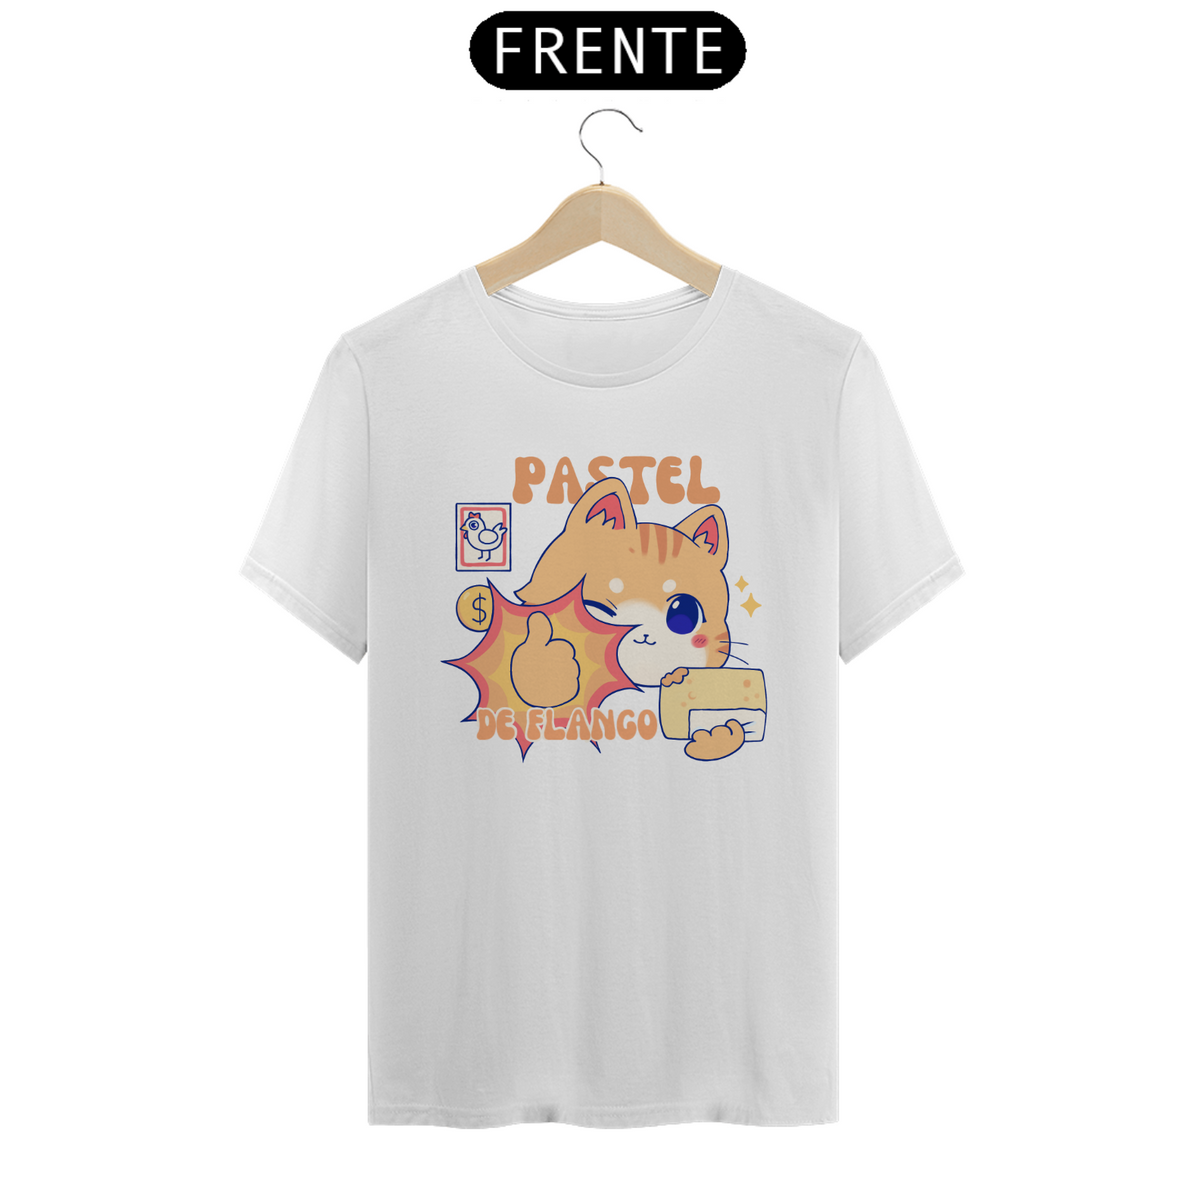 Nome do produto: T-Shirt gatinho com pastel de flango